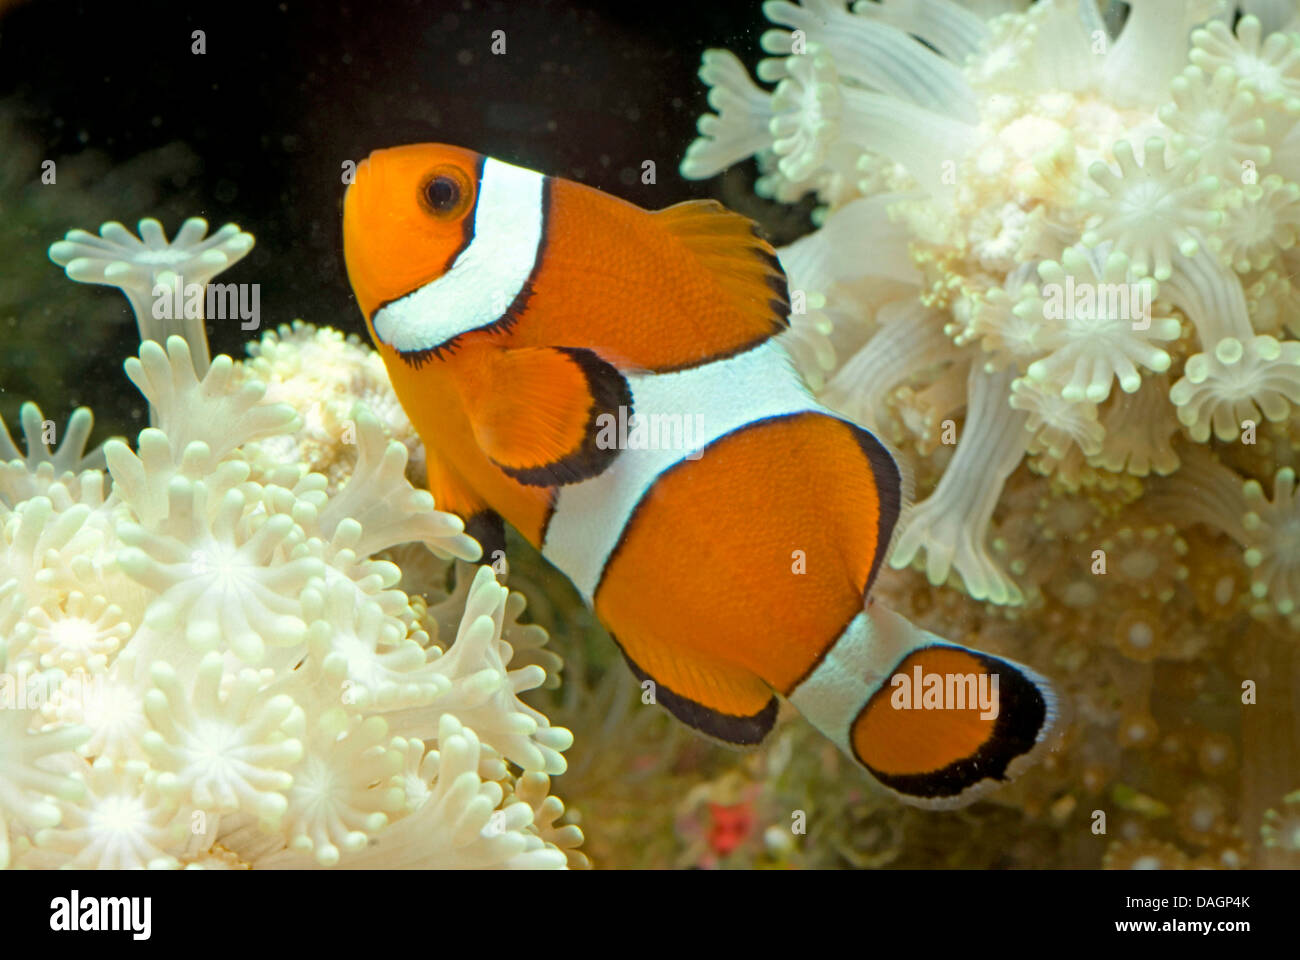 Orange clownfish, Clown anemonefish (Amphiprion percula), tra i tentacoli di un anemone marittimo Foto Stock